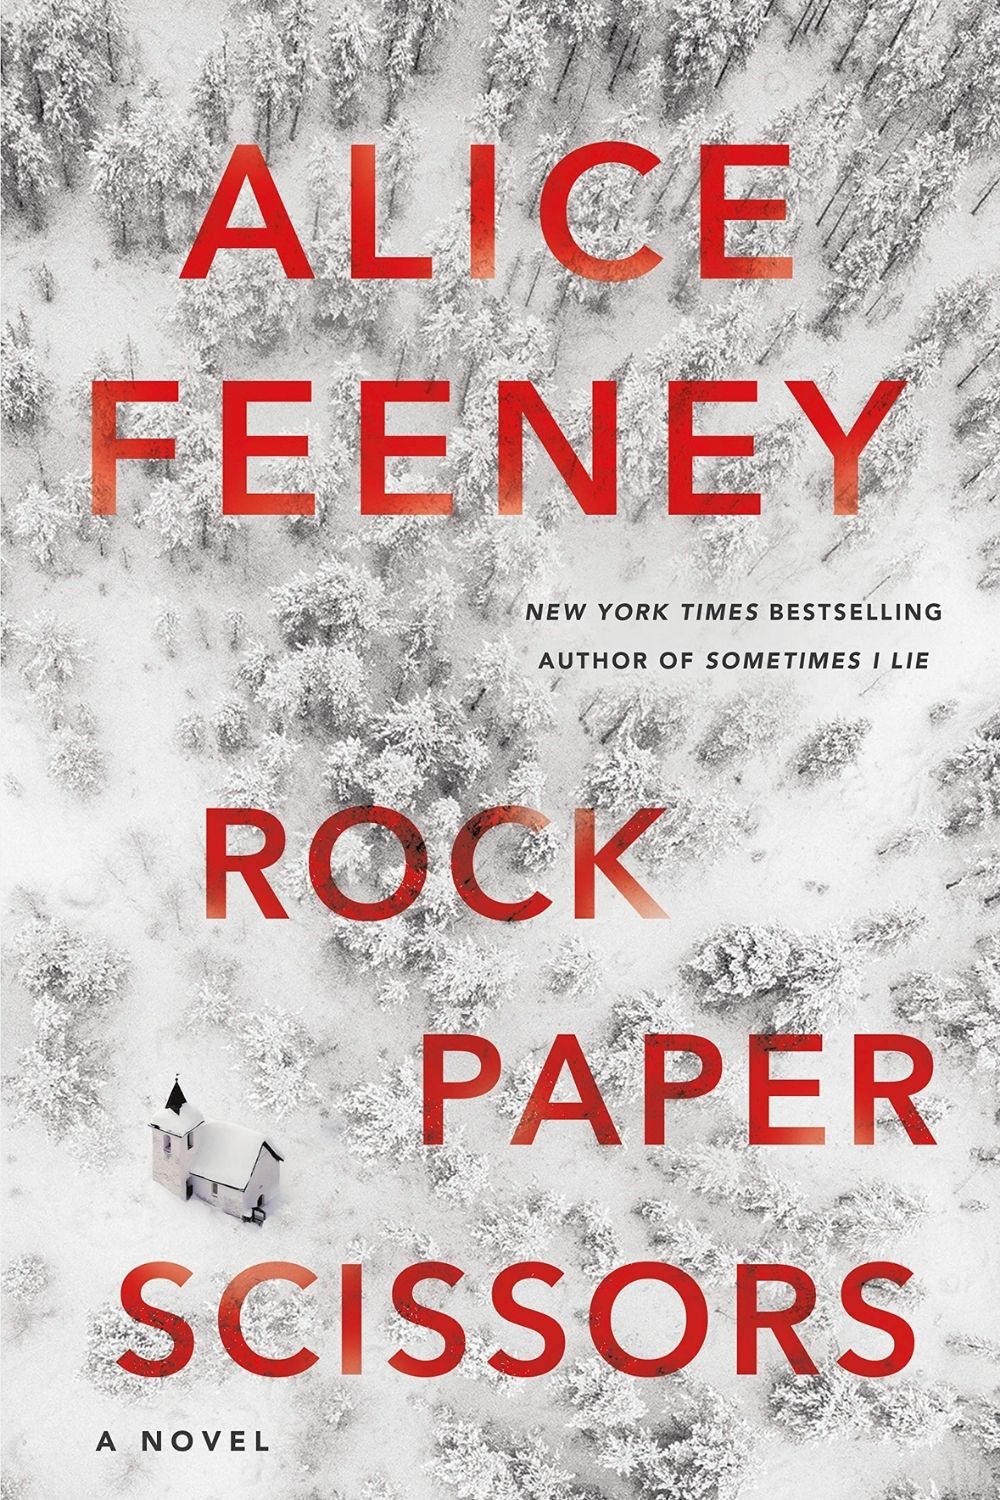 爱丽丝·菲尼 (Alice Feeney) 的石头剪刀布是一部富有创意的国内惊悚片